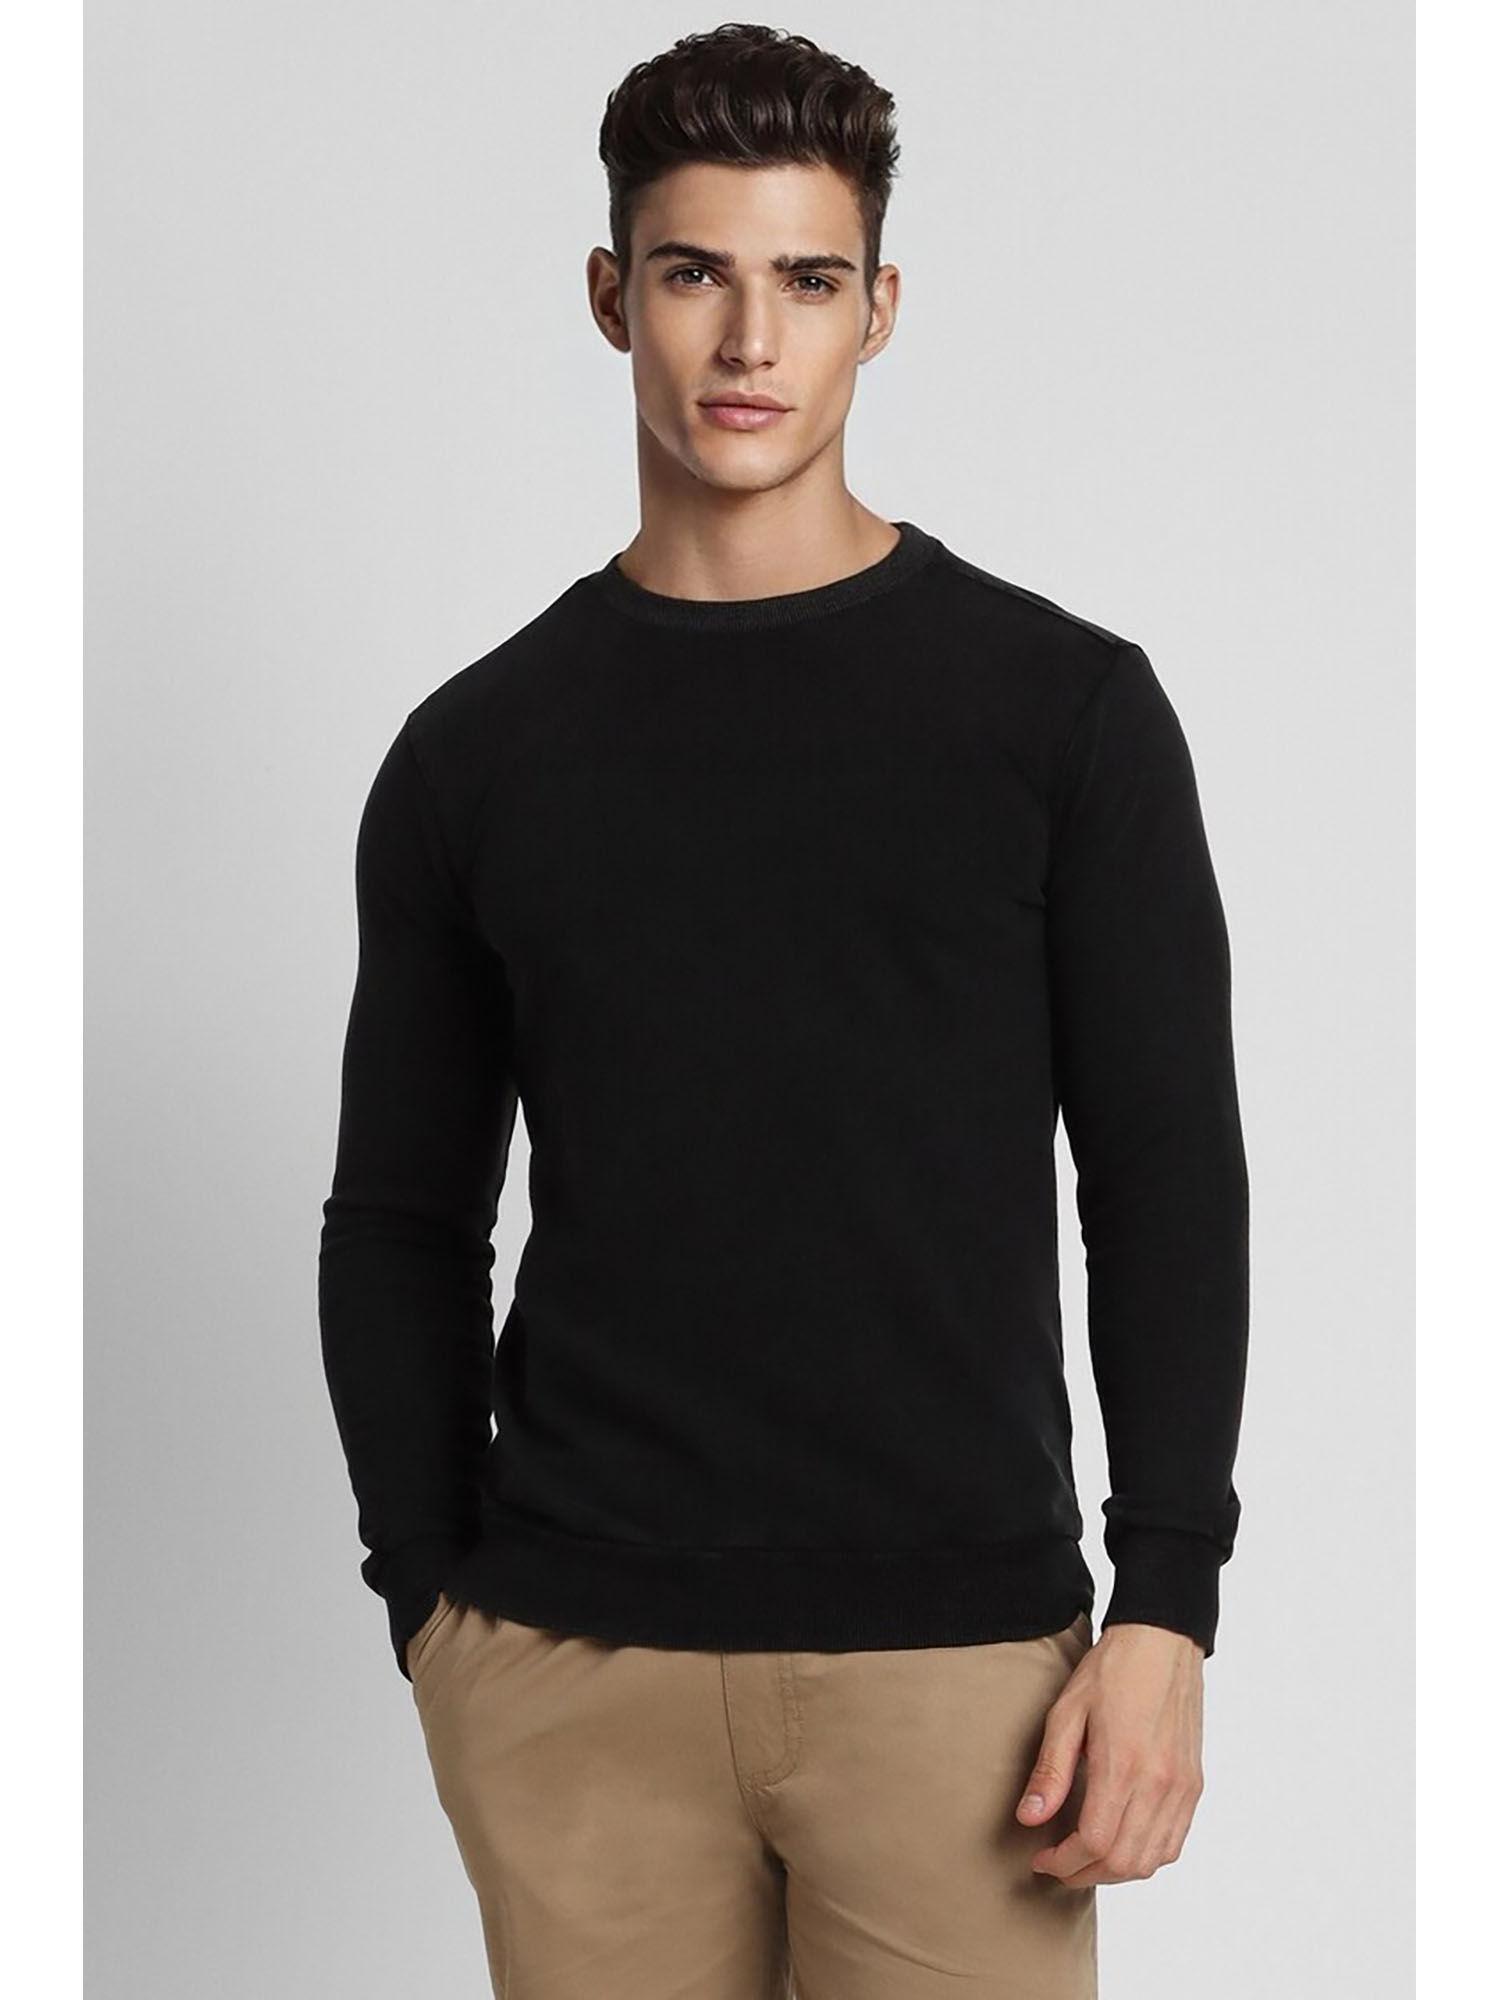 Men's Solid Black Sweatshirt